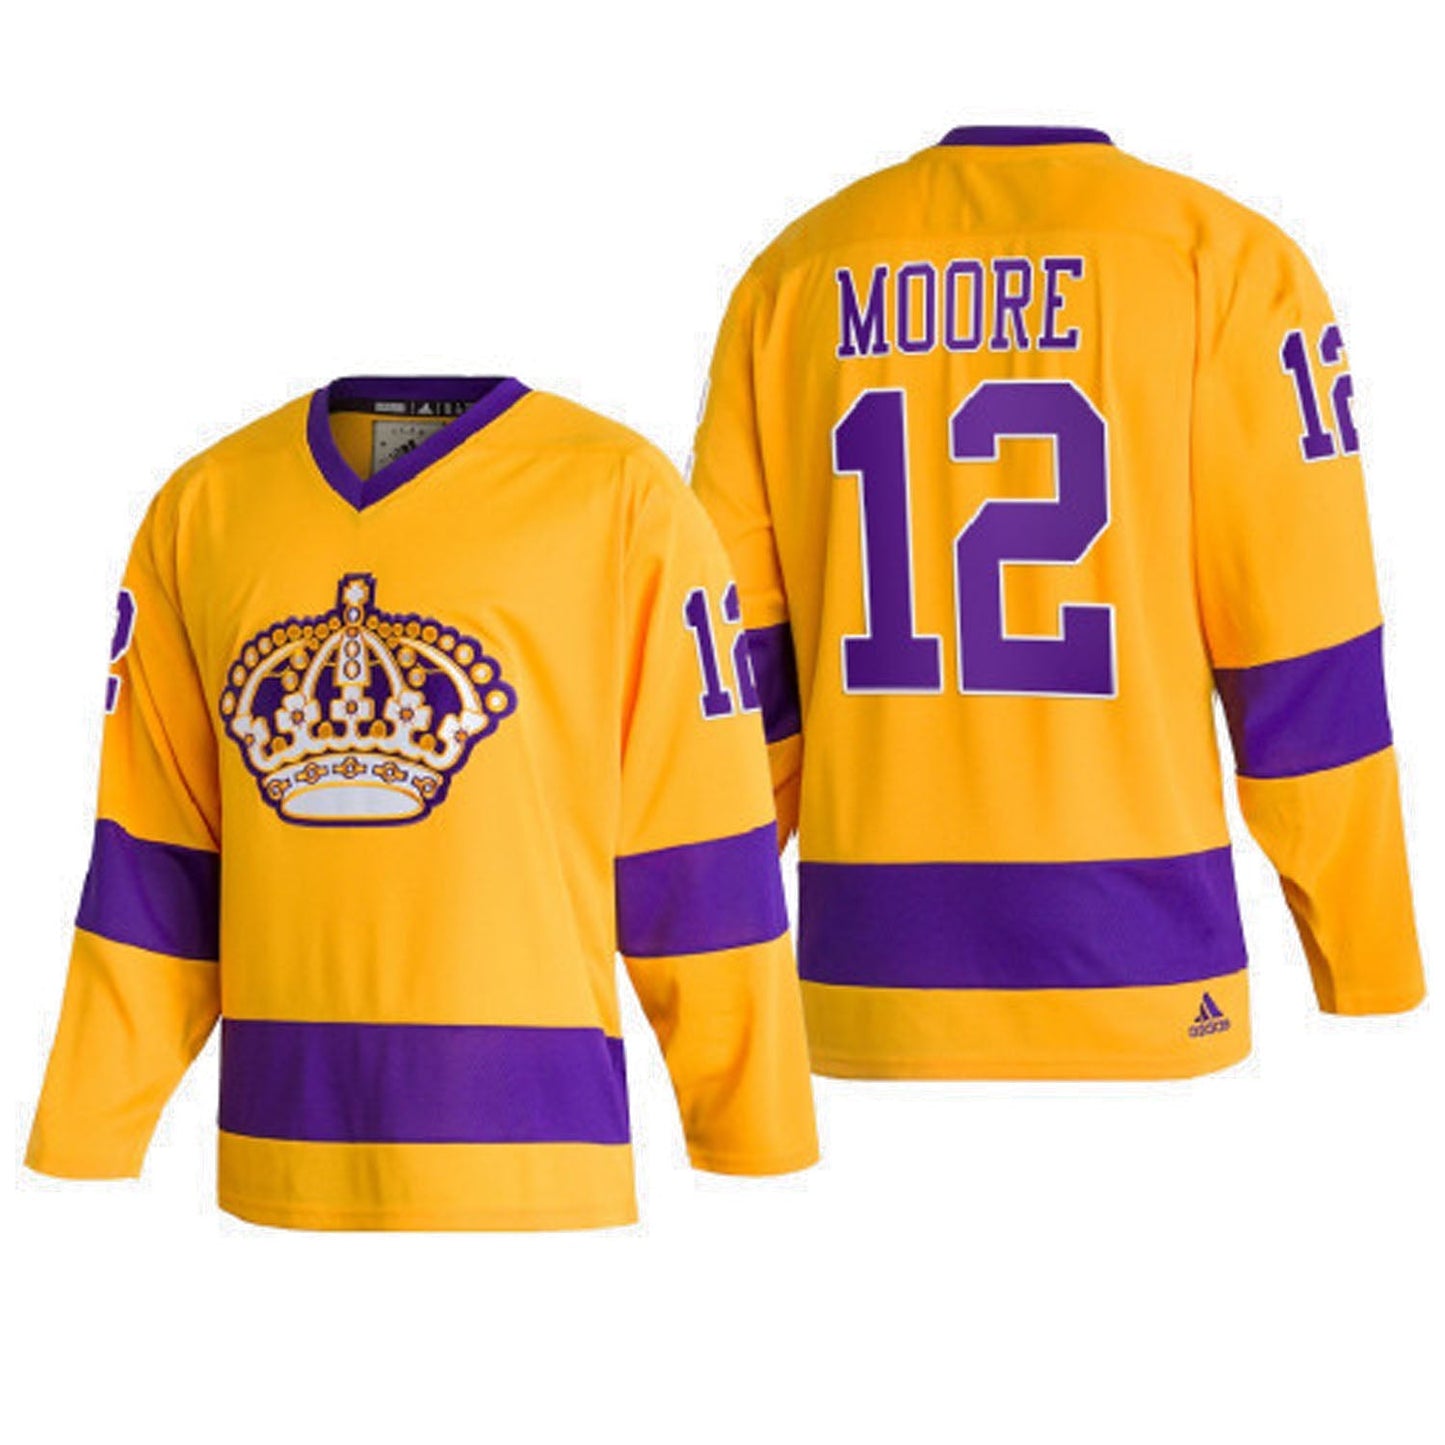 NHL Trevor Moore La Kings 12 Jersey